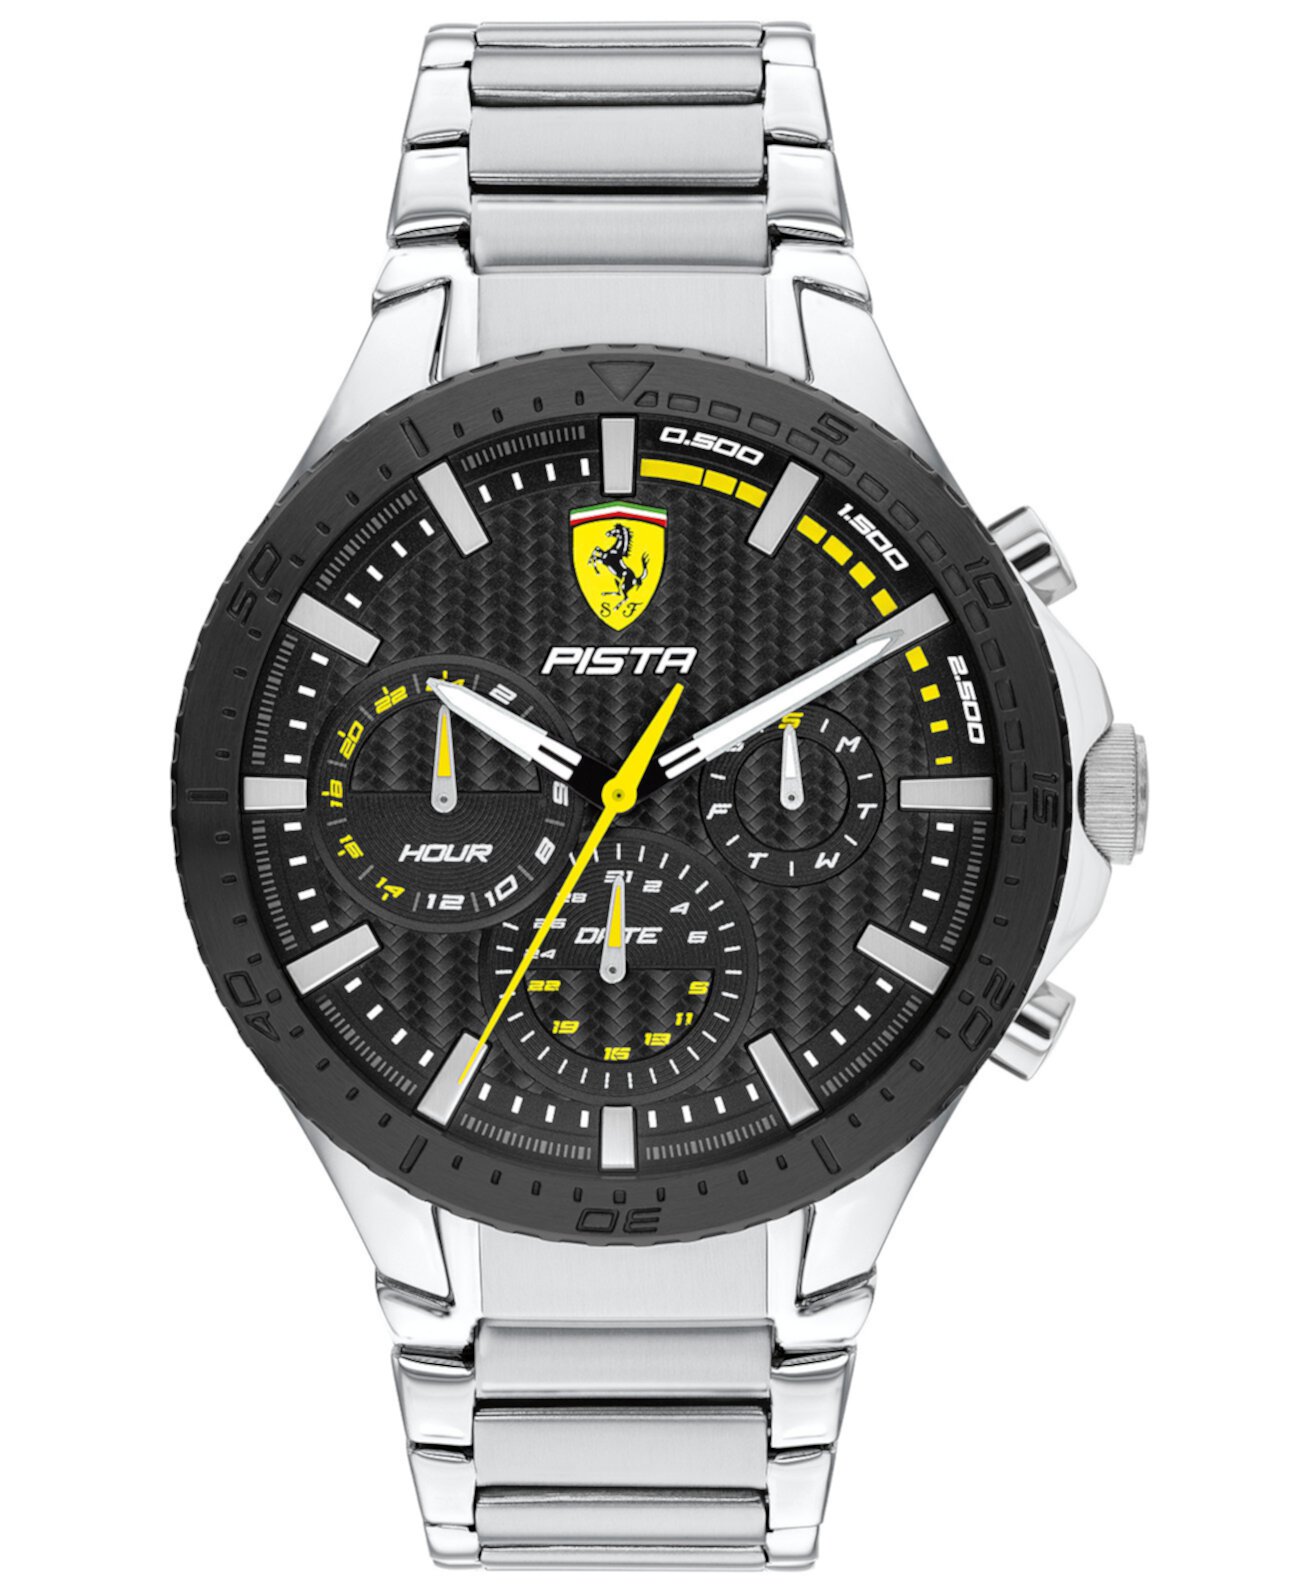 Мужские часы Pista с браслетом из нержавеющей стали, 44 мм Ferrari